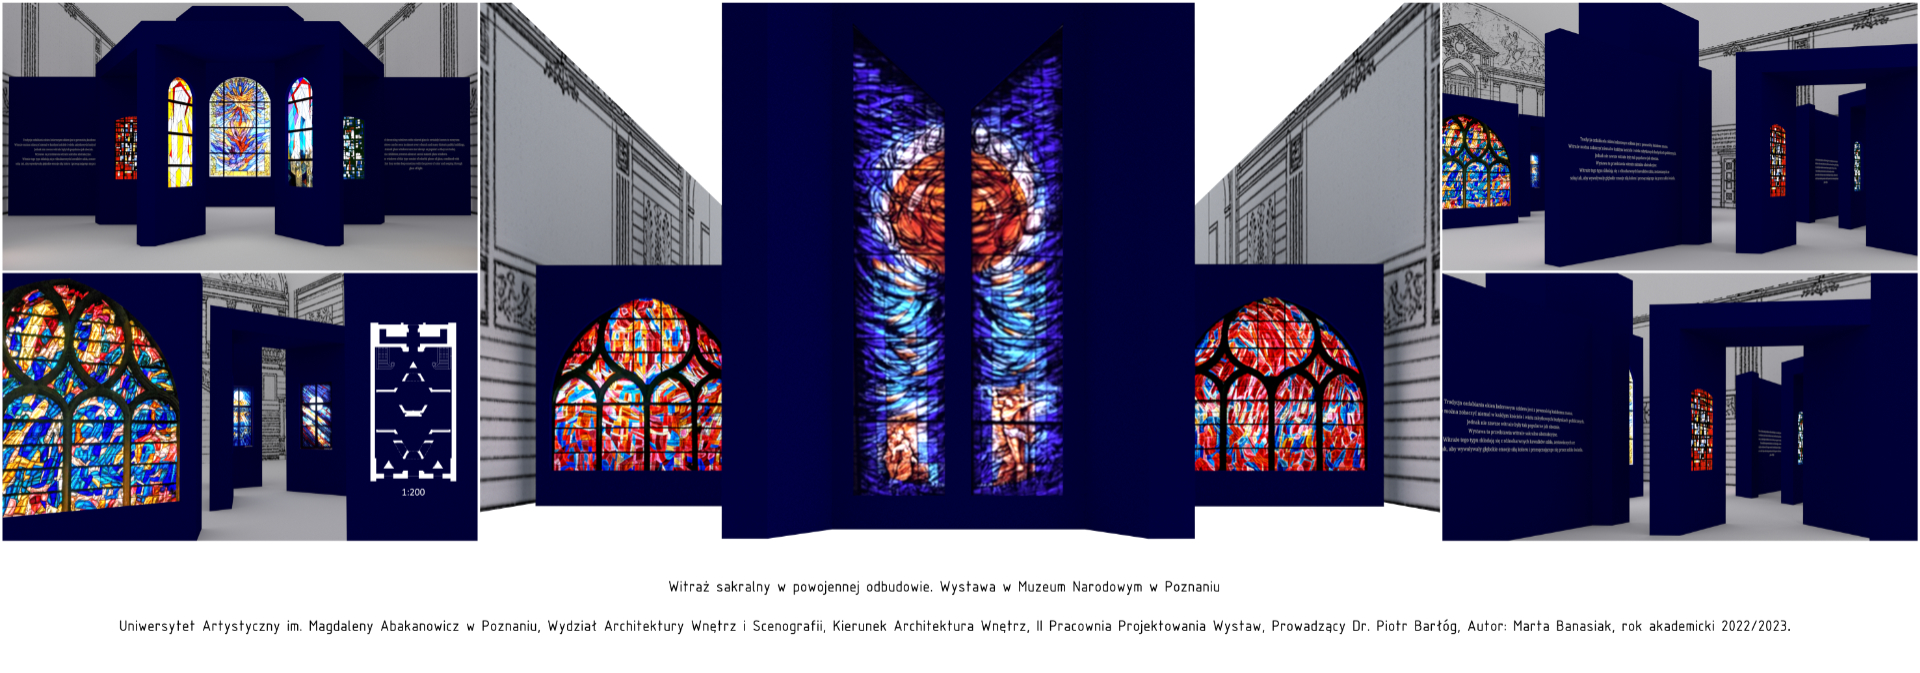 Projekt koncepcyjny wystawy czasowej w Muzeum Narodowym w Poznaniu, zawierający komputerowe wizualizacje barwnych widoków perspektywicznych, ukazujących przestrzeń ekspozycji z punktu widzenia osoby zwiedzającej oraz rzut.